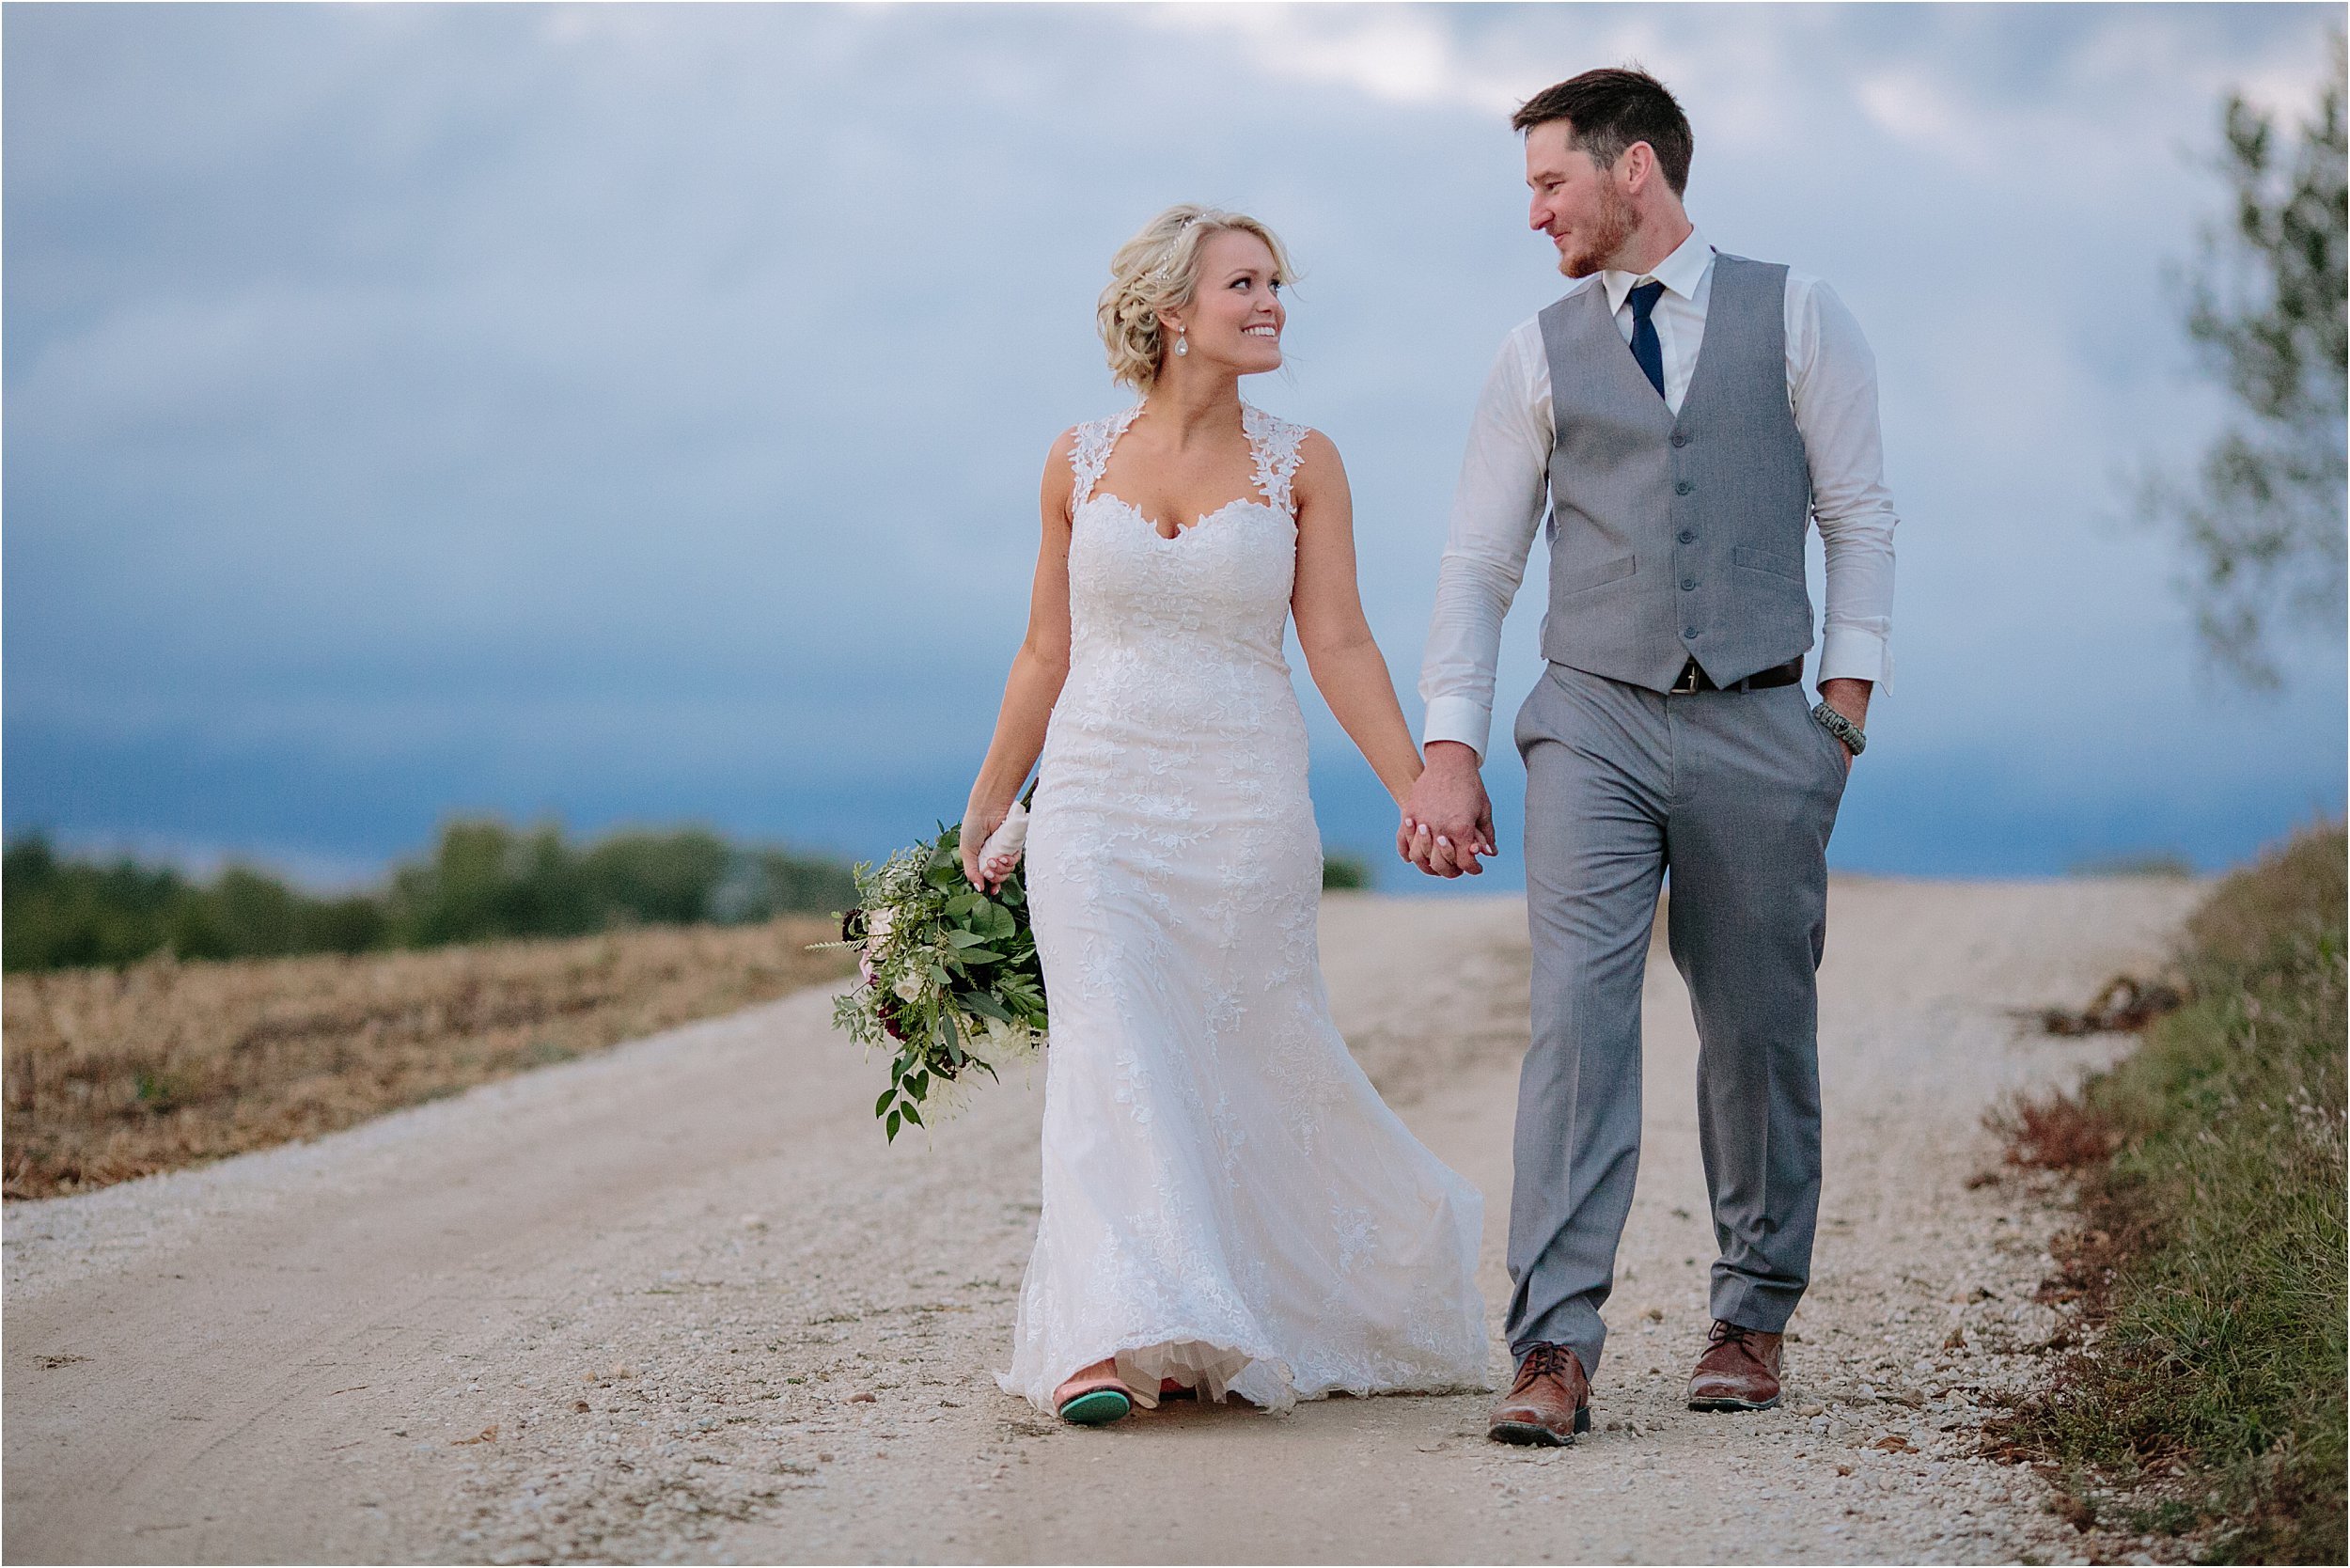 29-bride-groom-gravel-road-walking-hand-in-hand-blue-hour.JPG